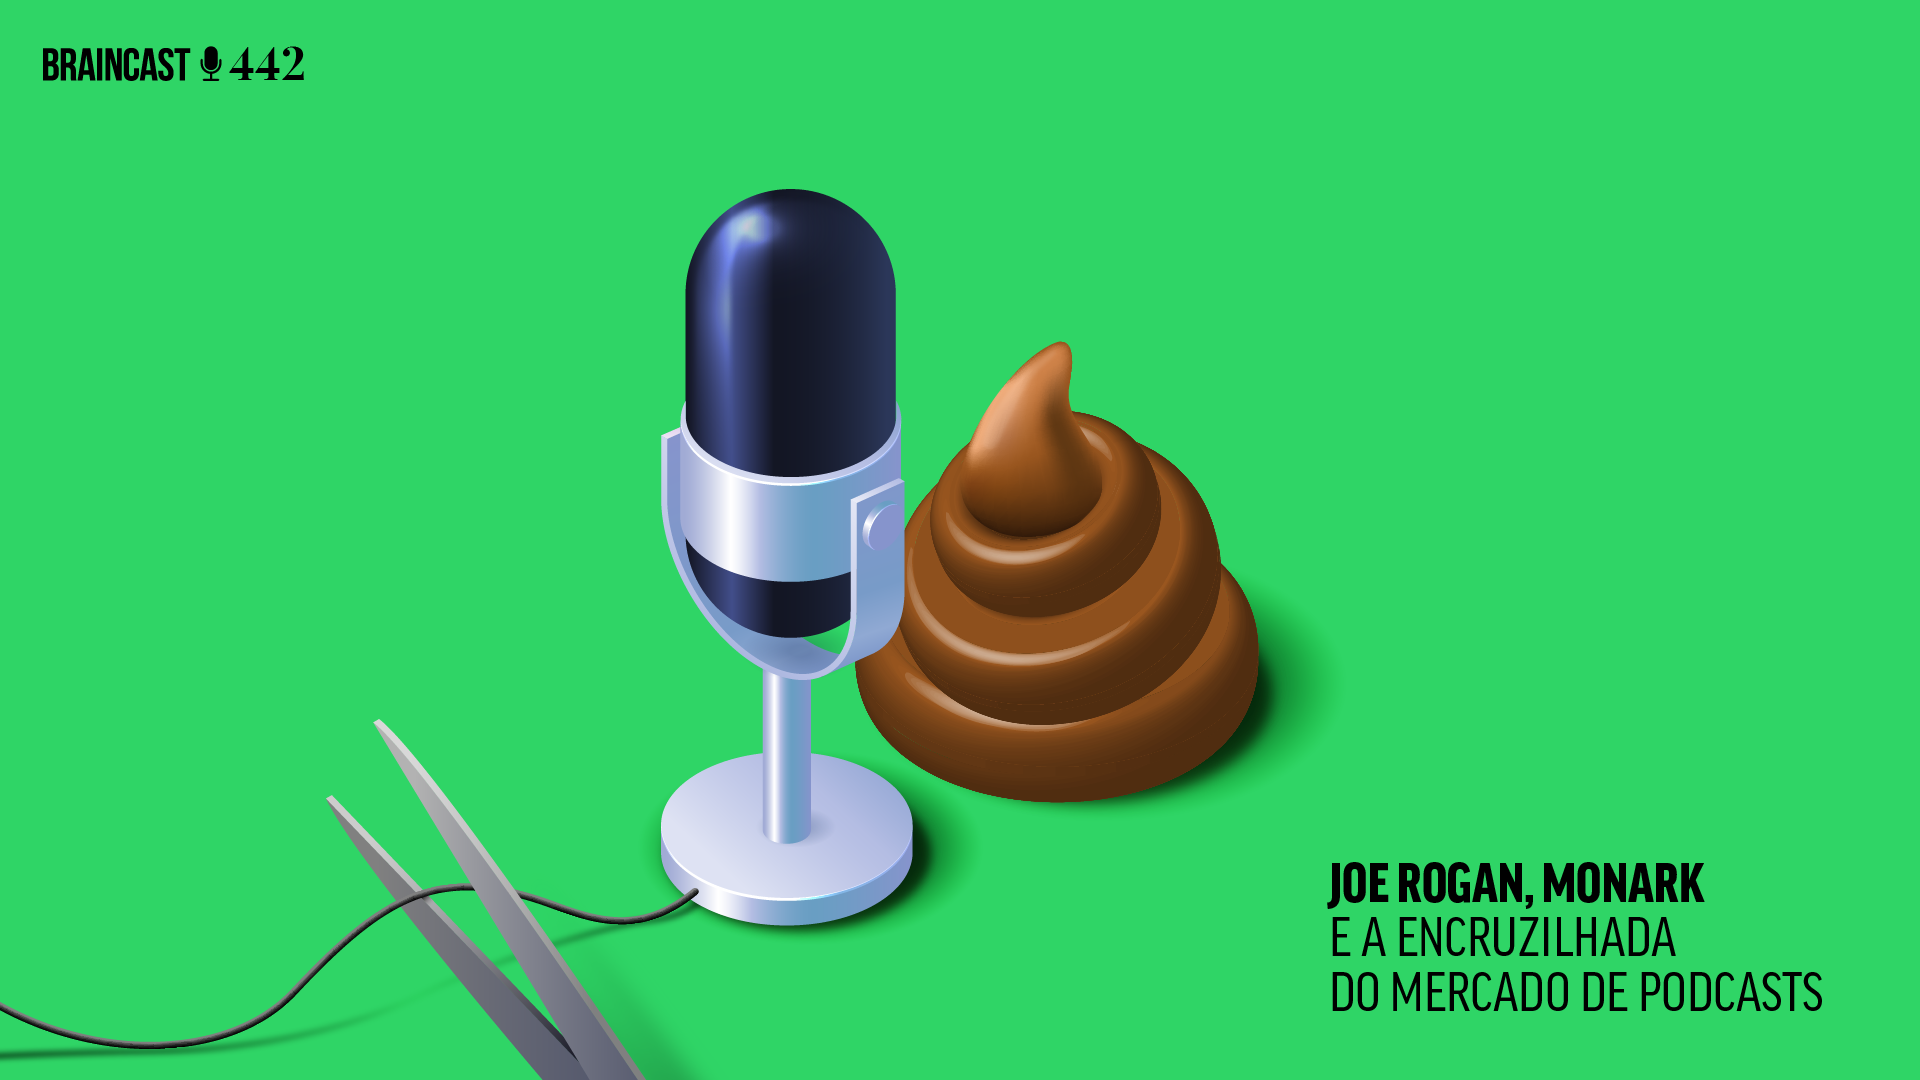 Braincast 442 – Joe Rogan, Monark e a encruzilhada do mercado de podcasts